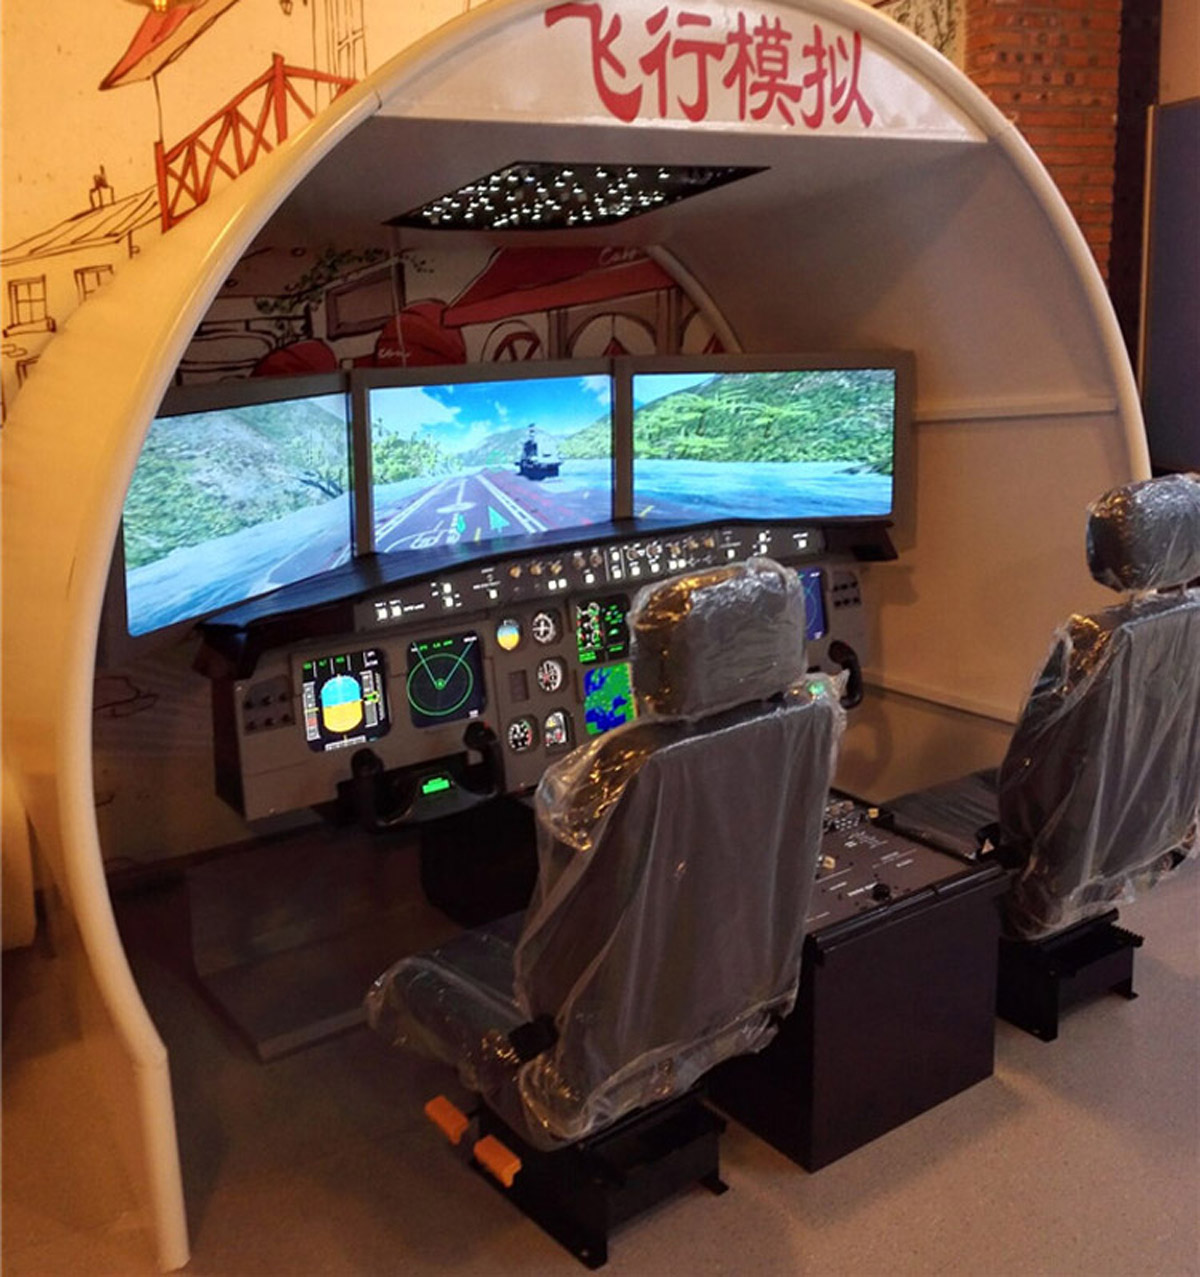 金山区展览展示空客飞行模拟器